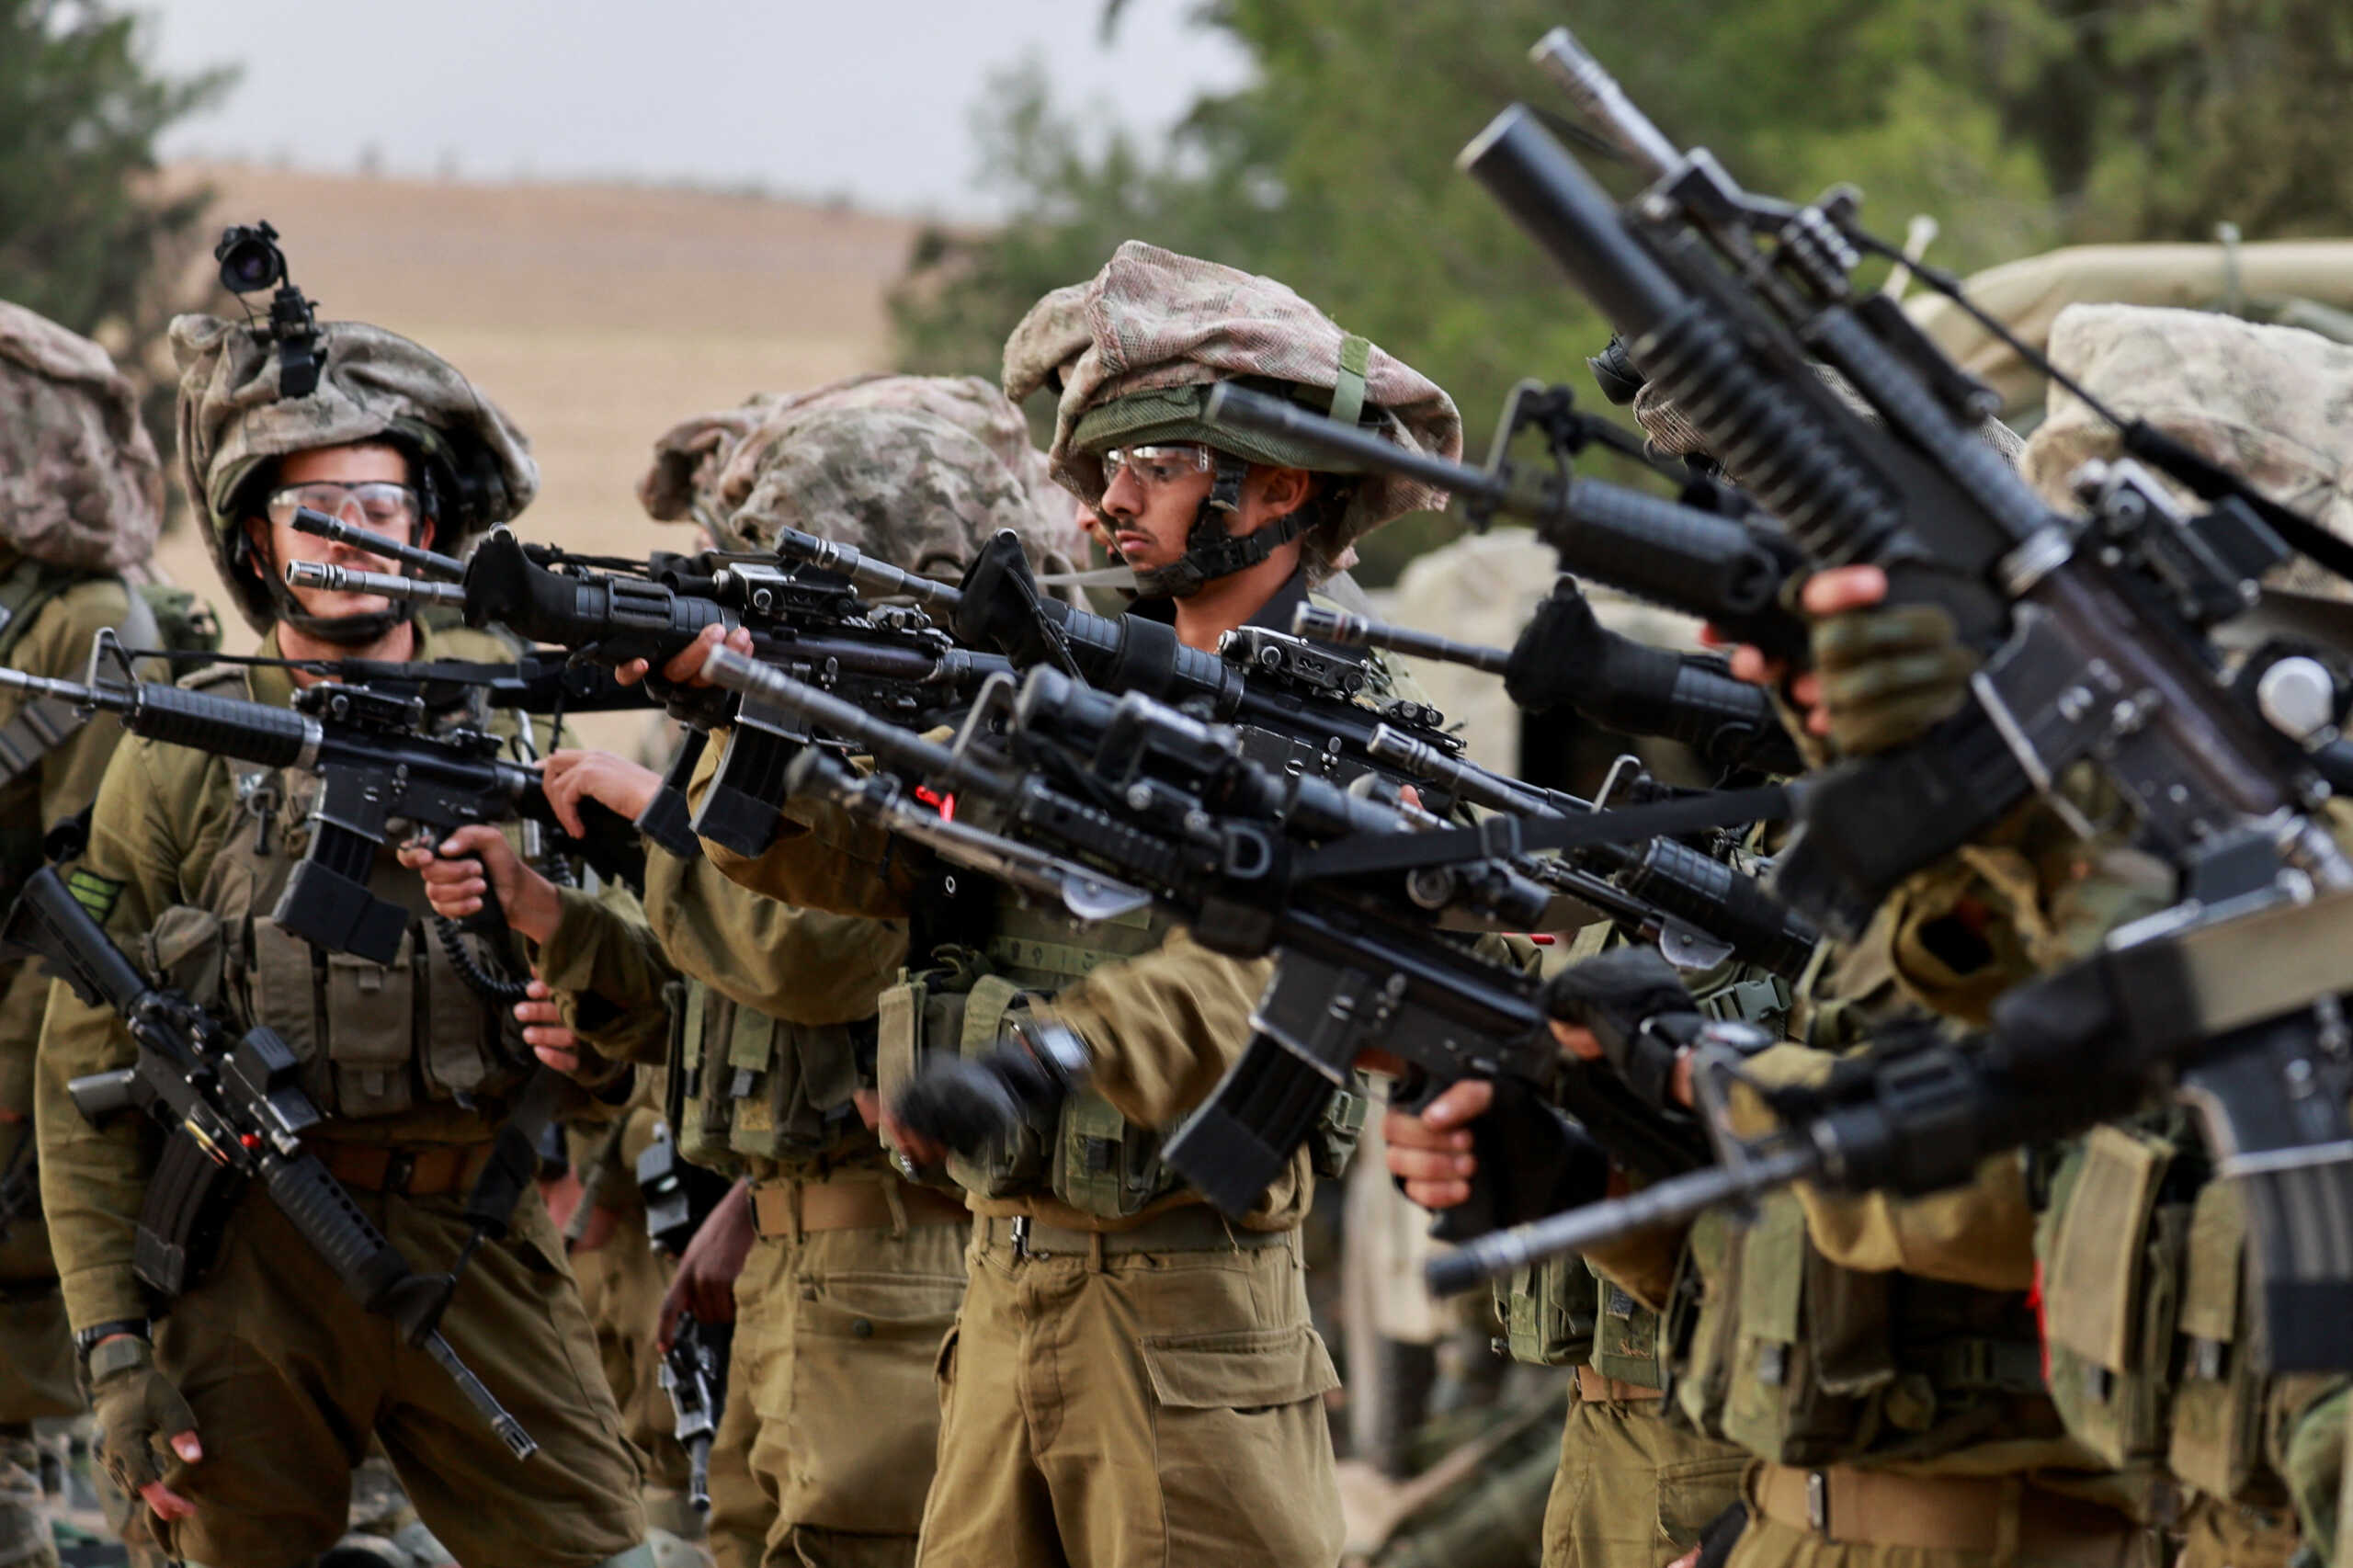 Νετανιάχου: Απερίγραπτη τραγωδία ο θάνατος των 3 ομήρων από το ισραηλινό στρατό